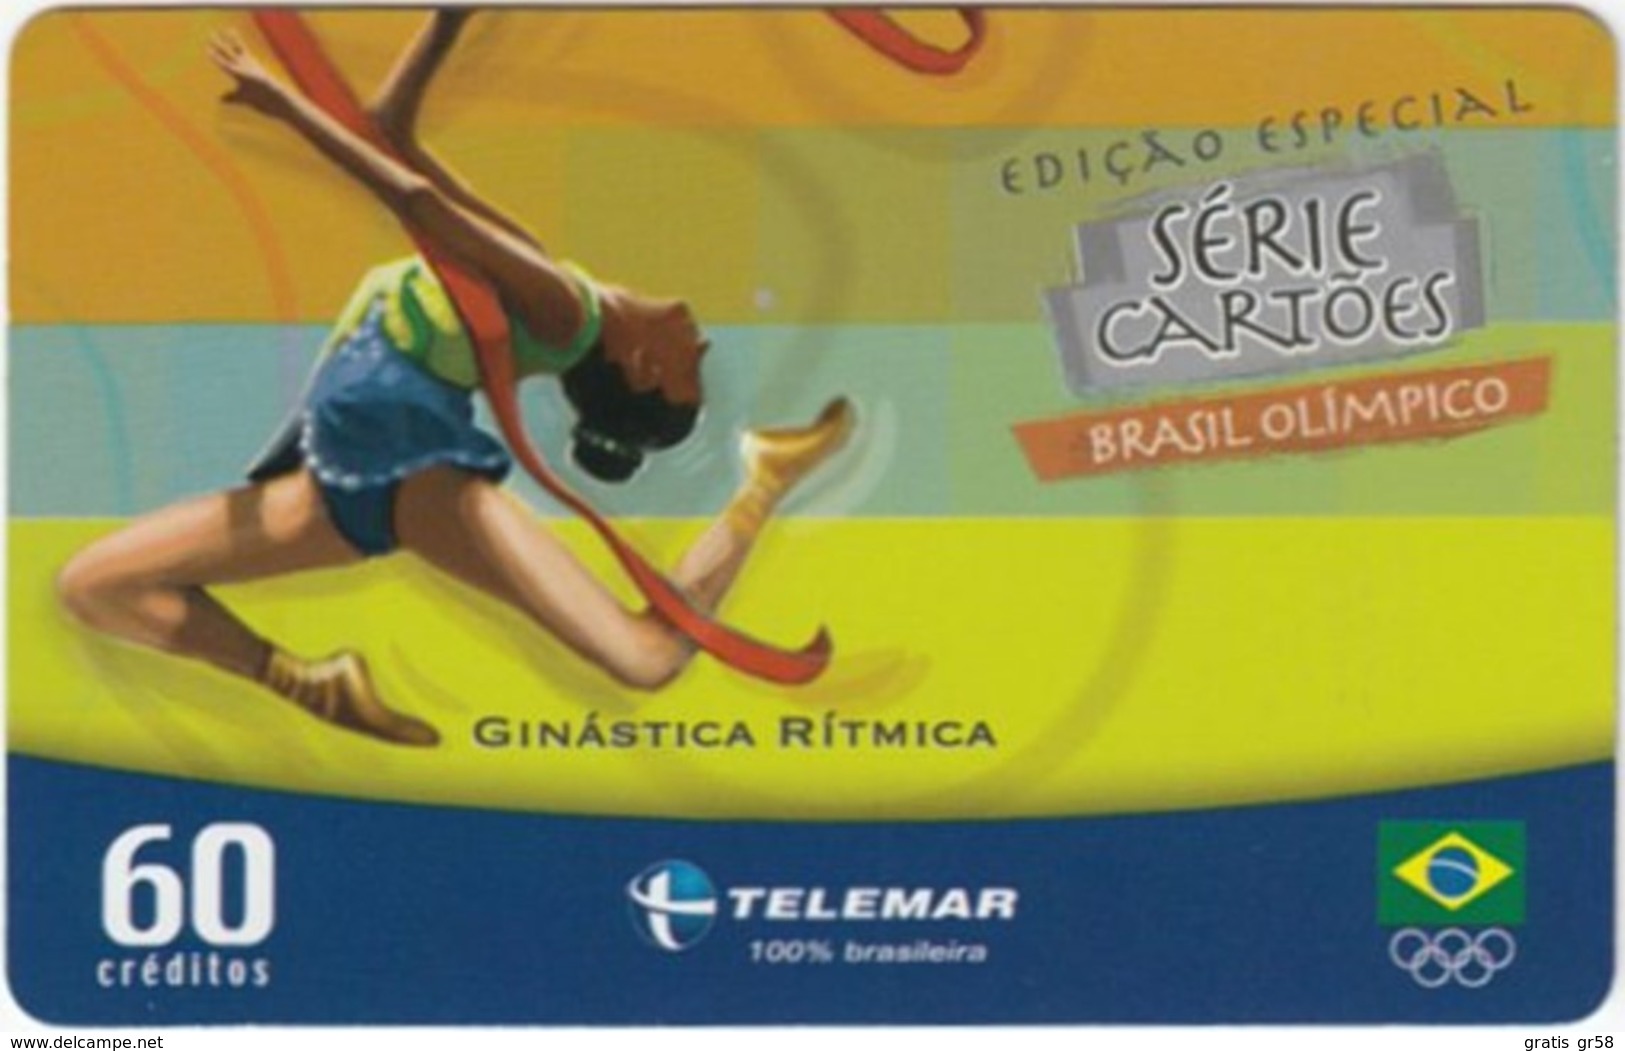 Brazil - BR-TLM-MG-2011, 06/34 - 0150, Event, Rhythm Gymnastics, 60U, 30,960ex, 4/04, Used - Olympische Spiele